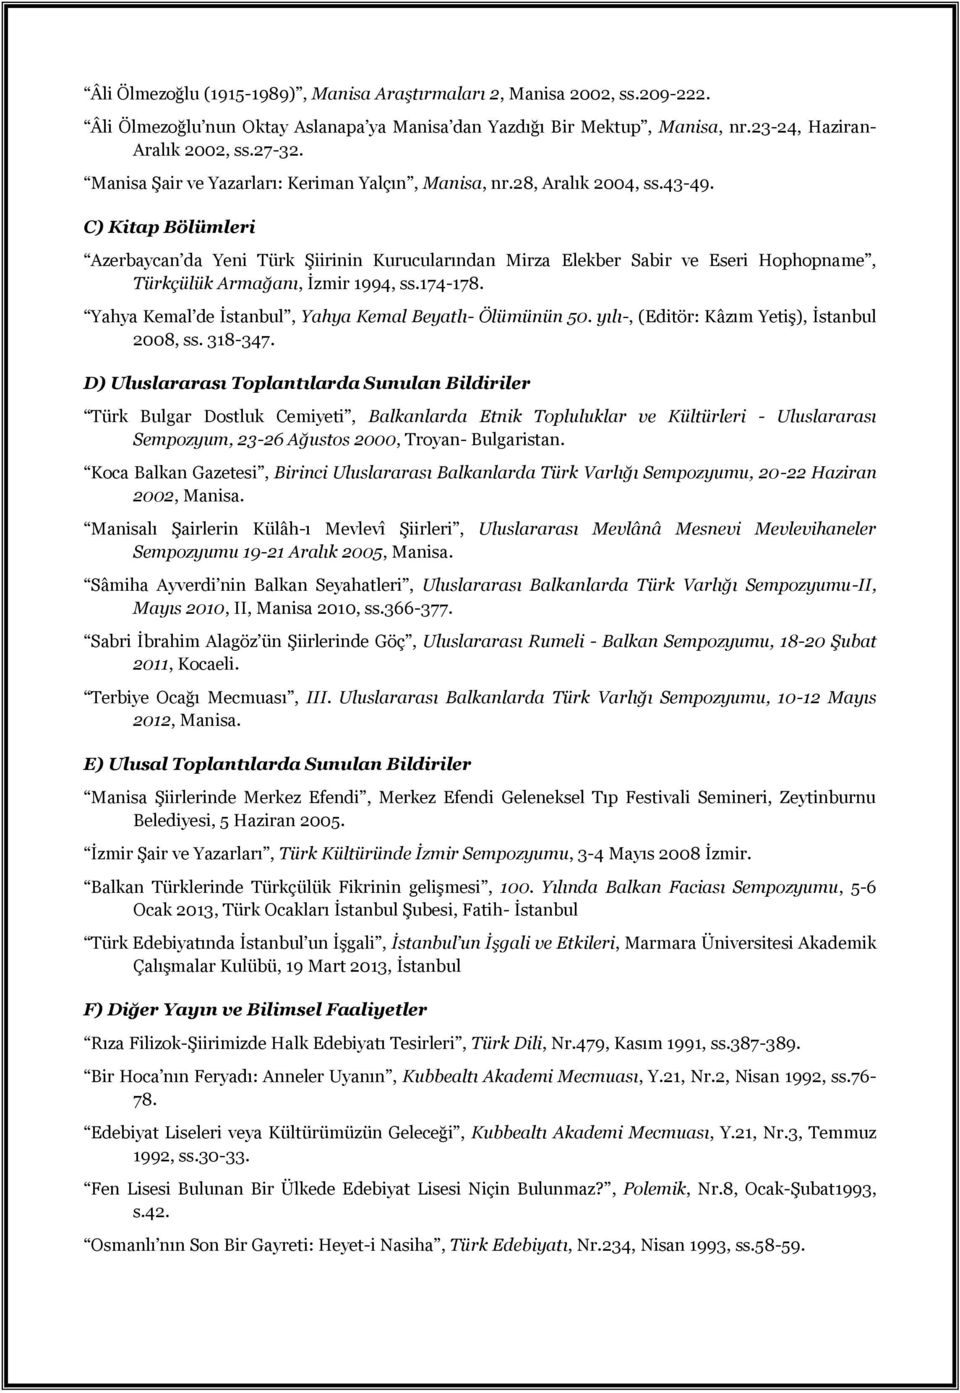 C) Kitap Bölümleri Azerbaycan da Yeni Türk Şiirinin Kurucularından Mirza Elekber Sabir ve Eseri Hophopname, Türkçülük Armağanı, İzmir 1994, ss.174-178.